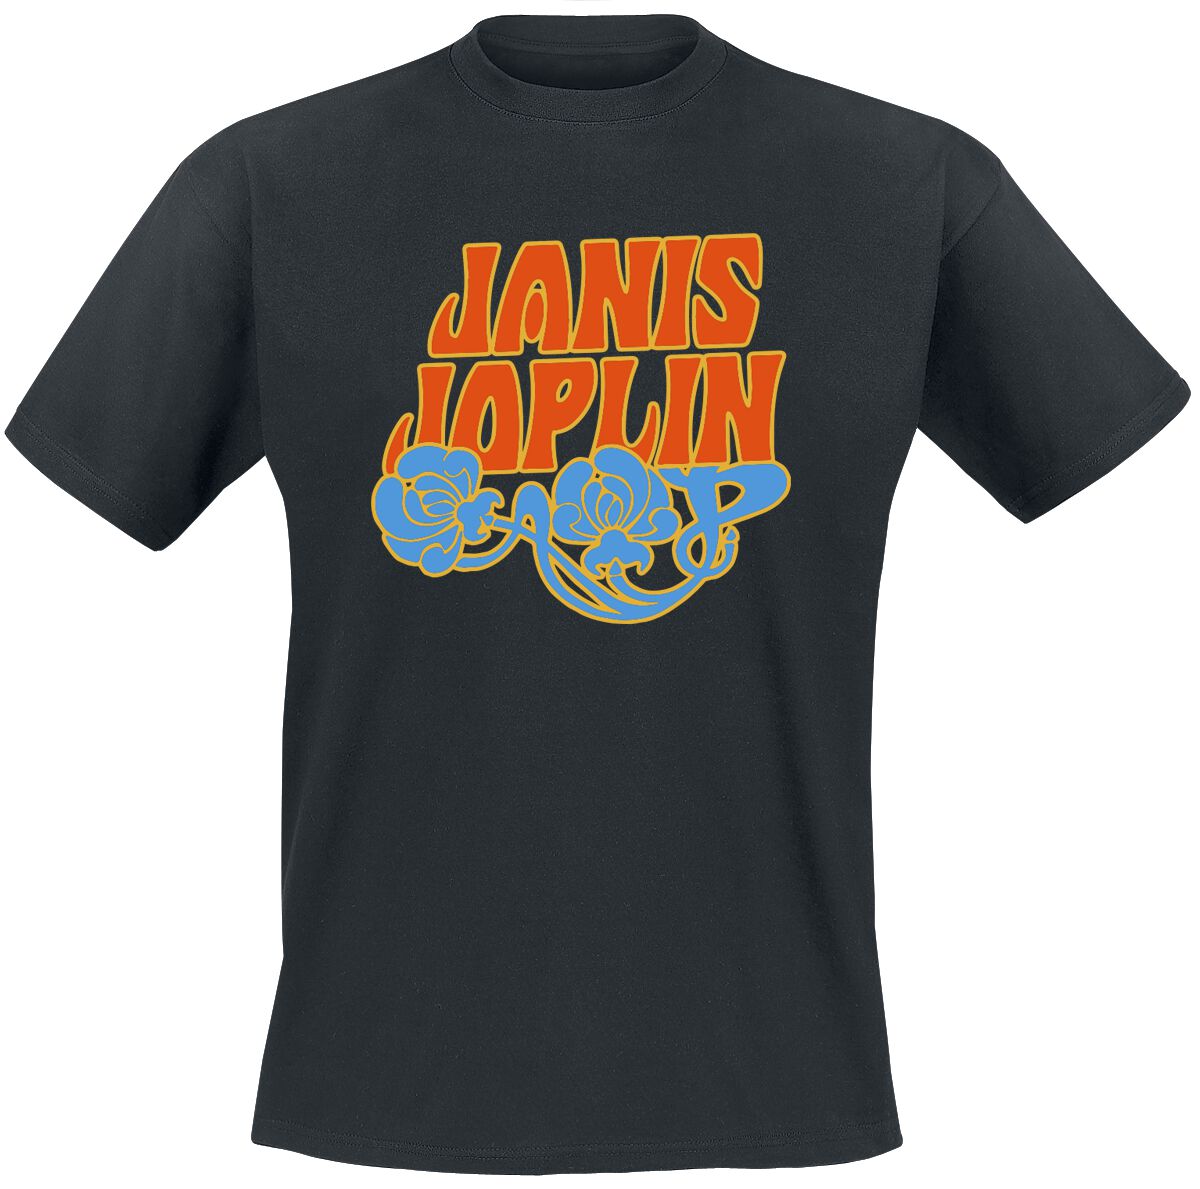 Joplin, Janis T-Shirt - Floral Logo - S bis XXL - für Männer - Größe S - schwarz  - EMP exklusives Merchandise!